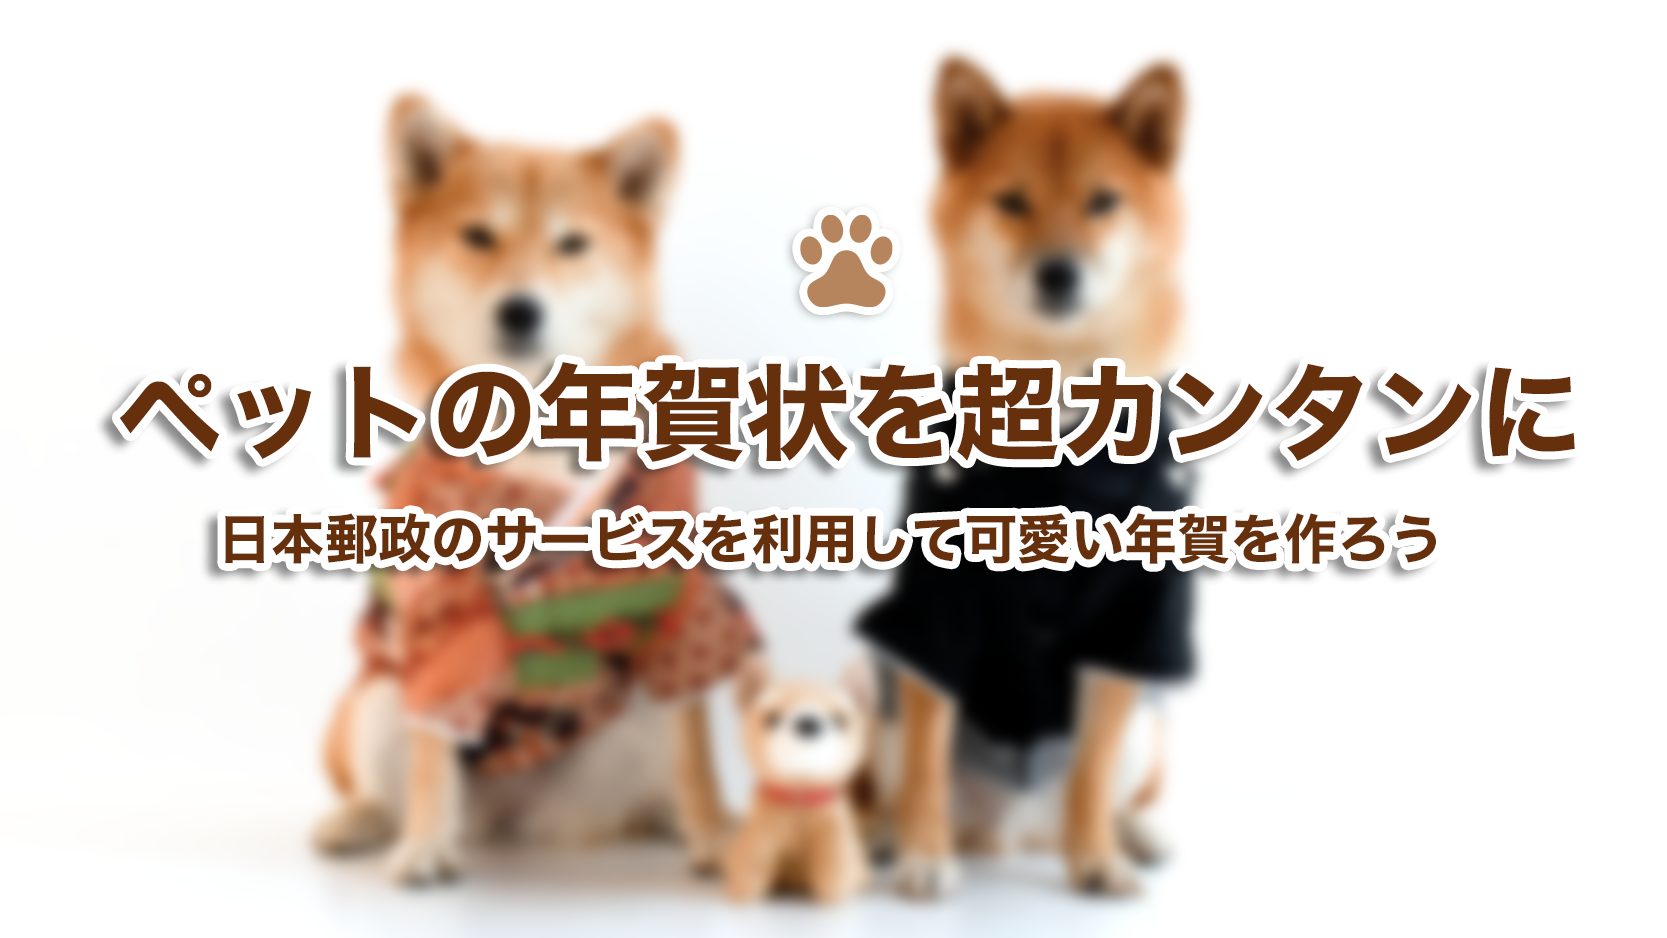 年賀状どうする ペットの写真を可愛くデコ 日本郵政のサービス はがきデザインキット19 が便利そう